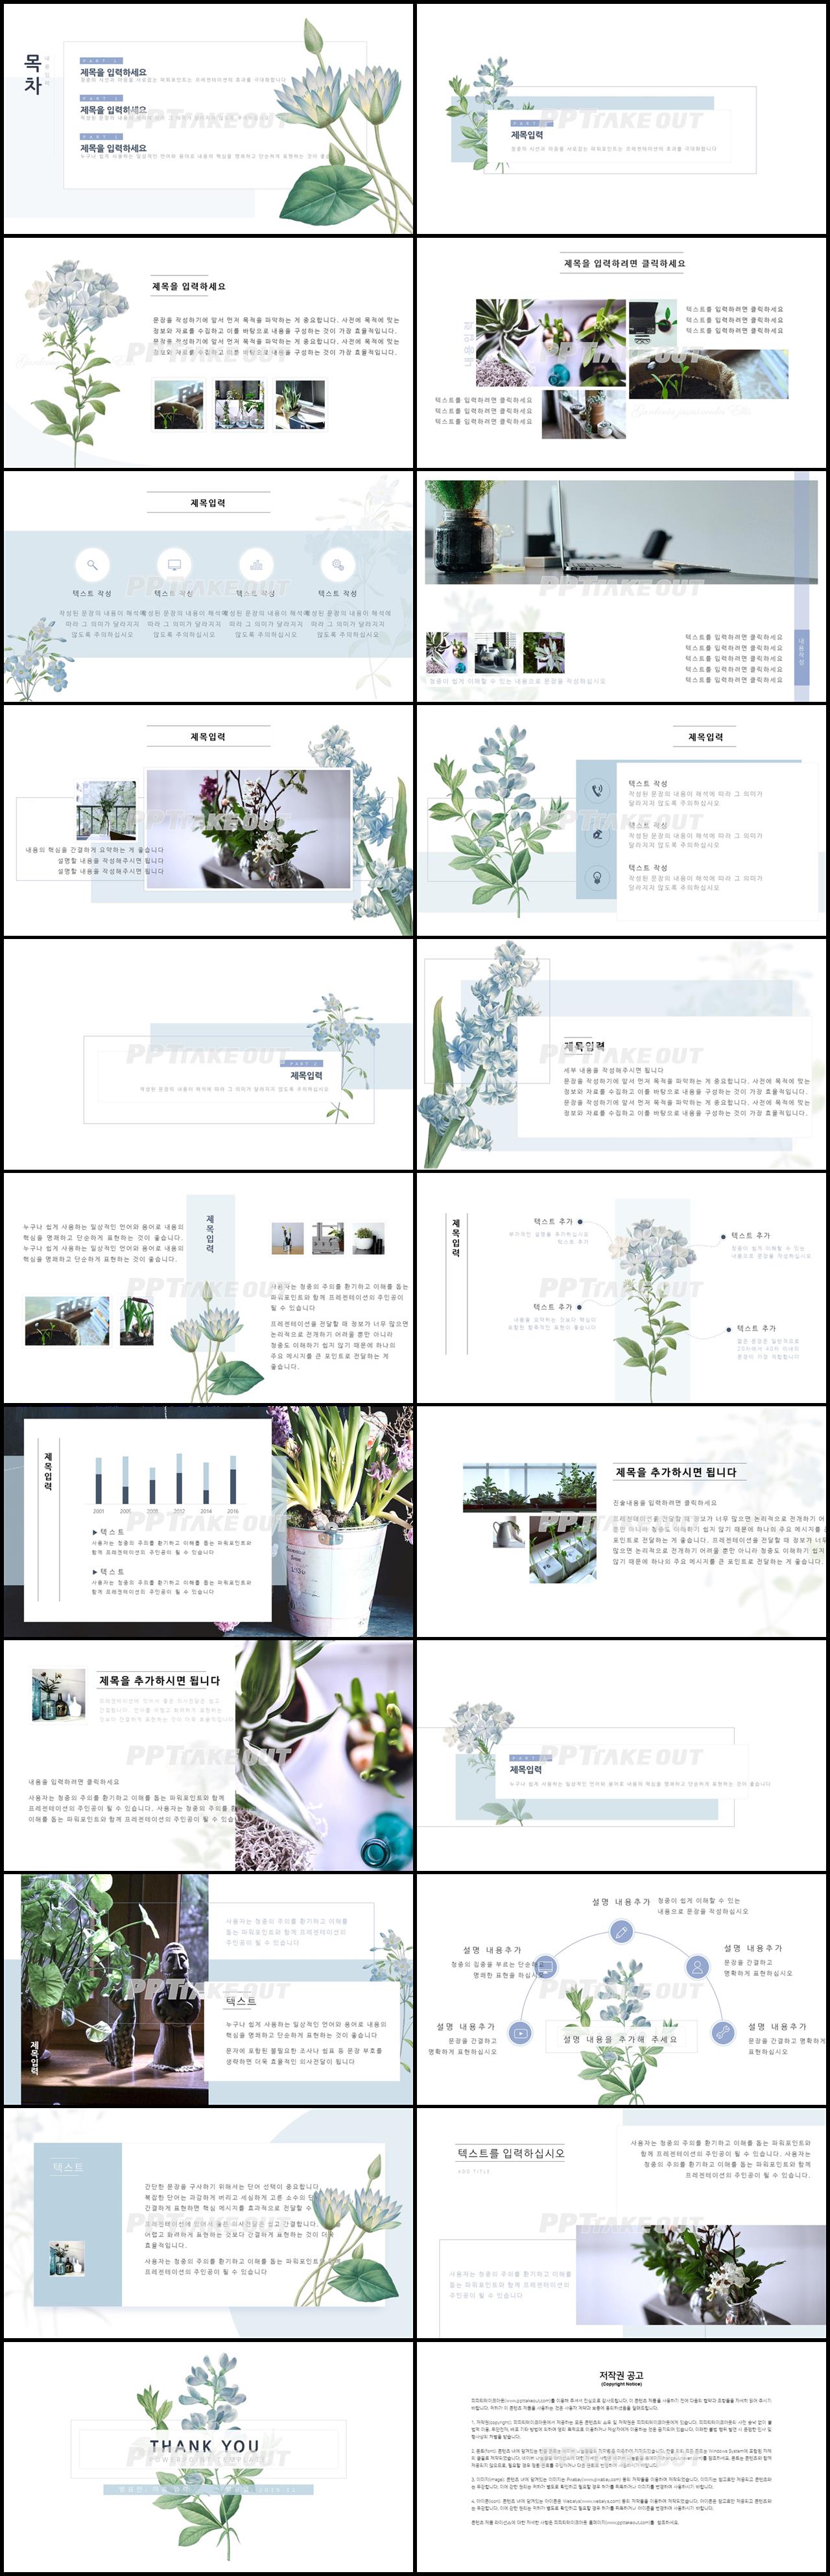 꽃과 동식물 주제 그린색 단정한 발표용 POWERPOINT탬플릿 다운 상세보기